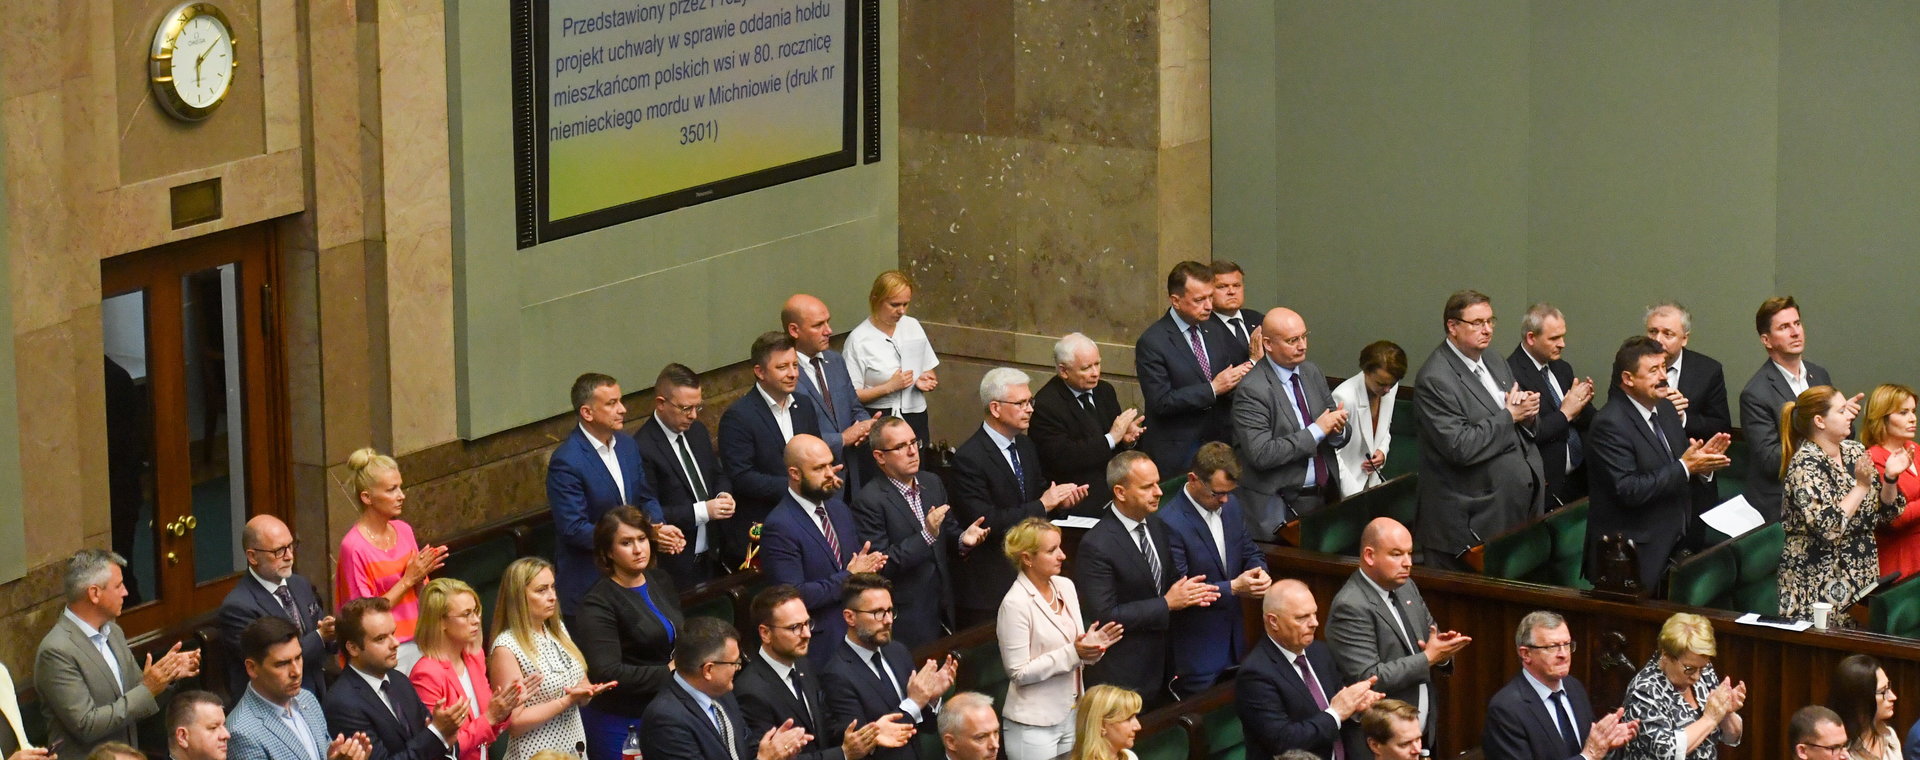 Sejm przez aklamację przyjął też uchwałę w sprawie oddania hołdu mieszkańcom polskich wsi w 80. rocznicę niemieckiego mordu w Michniowie